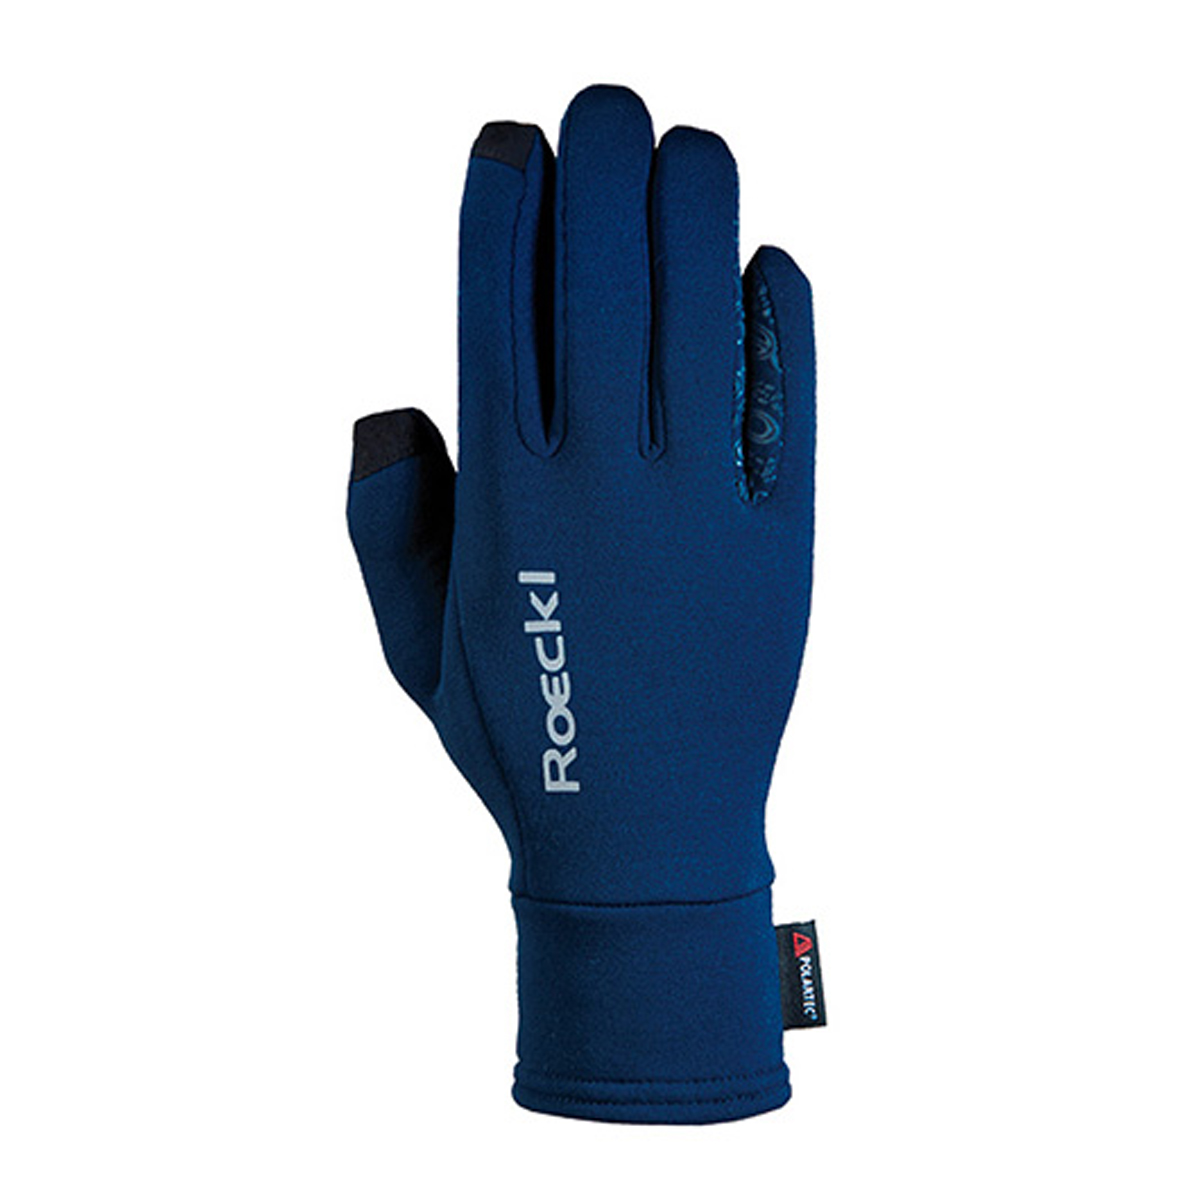 Handschoenen Roeckl Weldon Polartec, 10 in donkerblauw